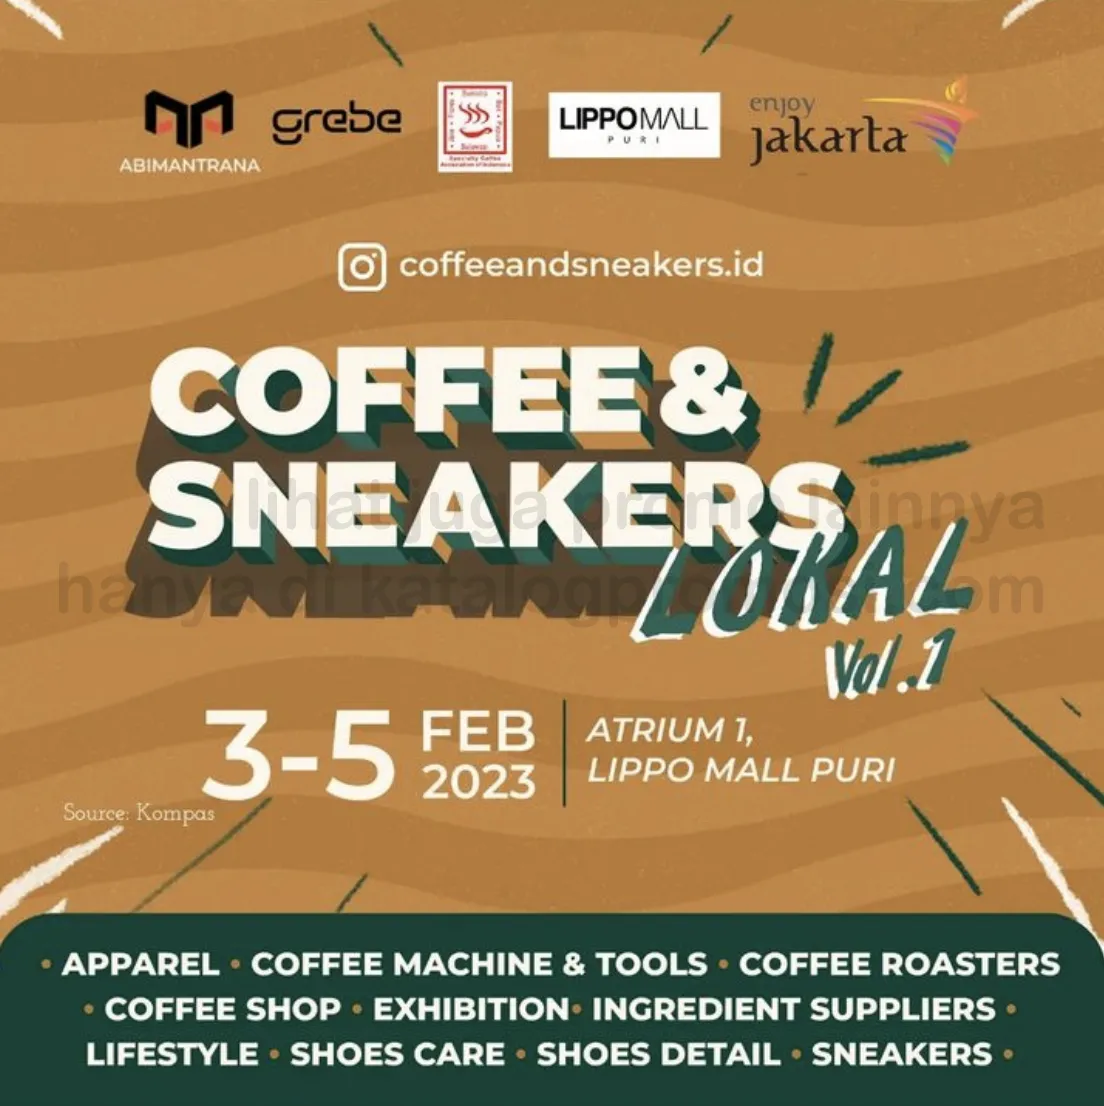 Coffee and Sneakers Lokal Vol. 1 di LIPPO MALL PURI